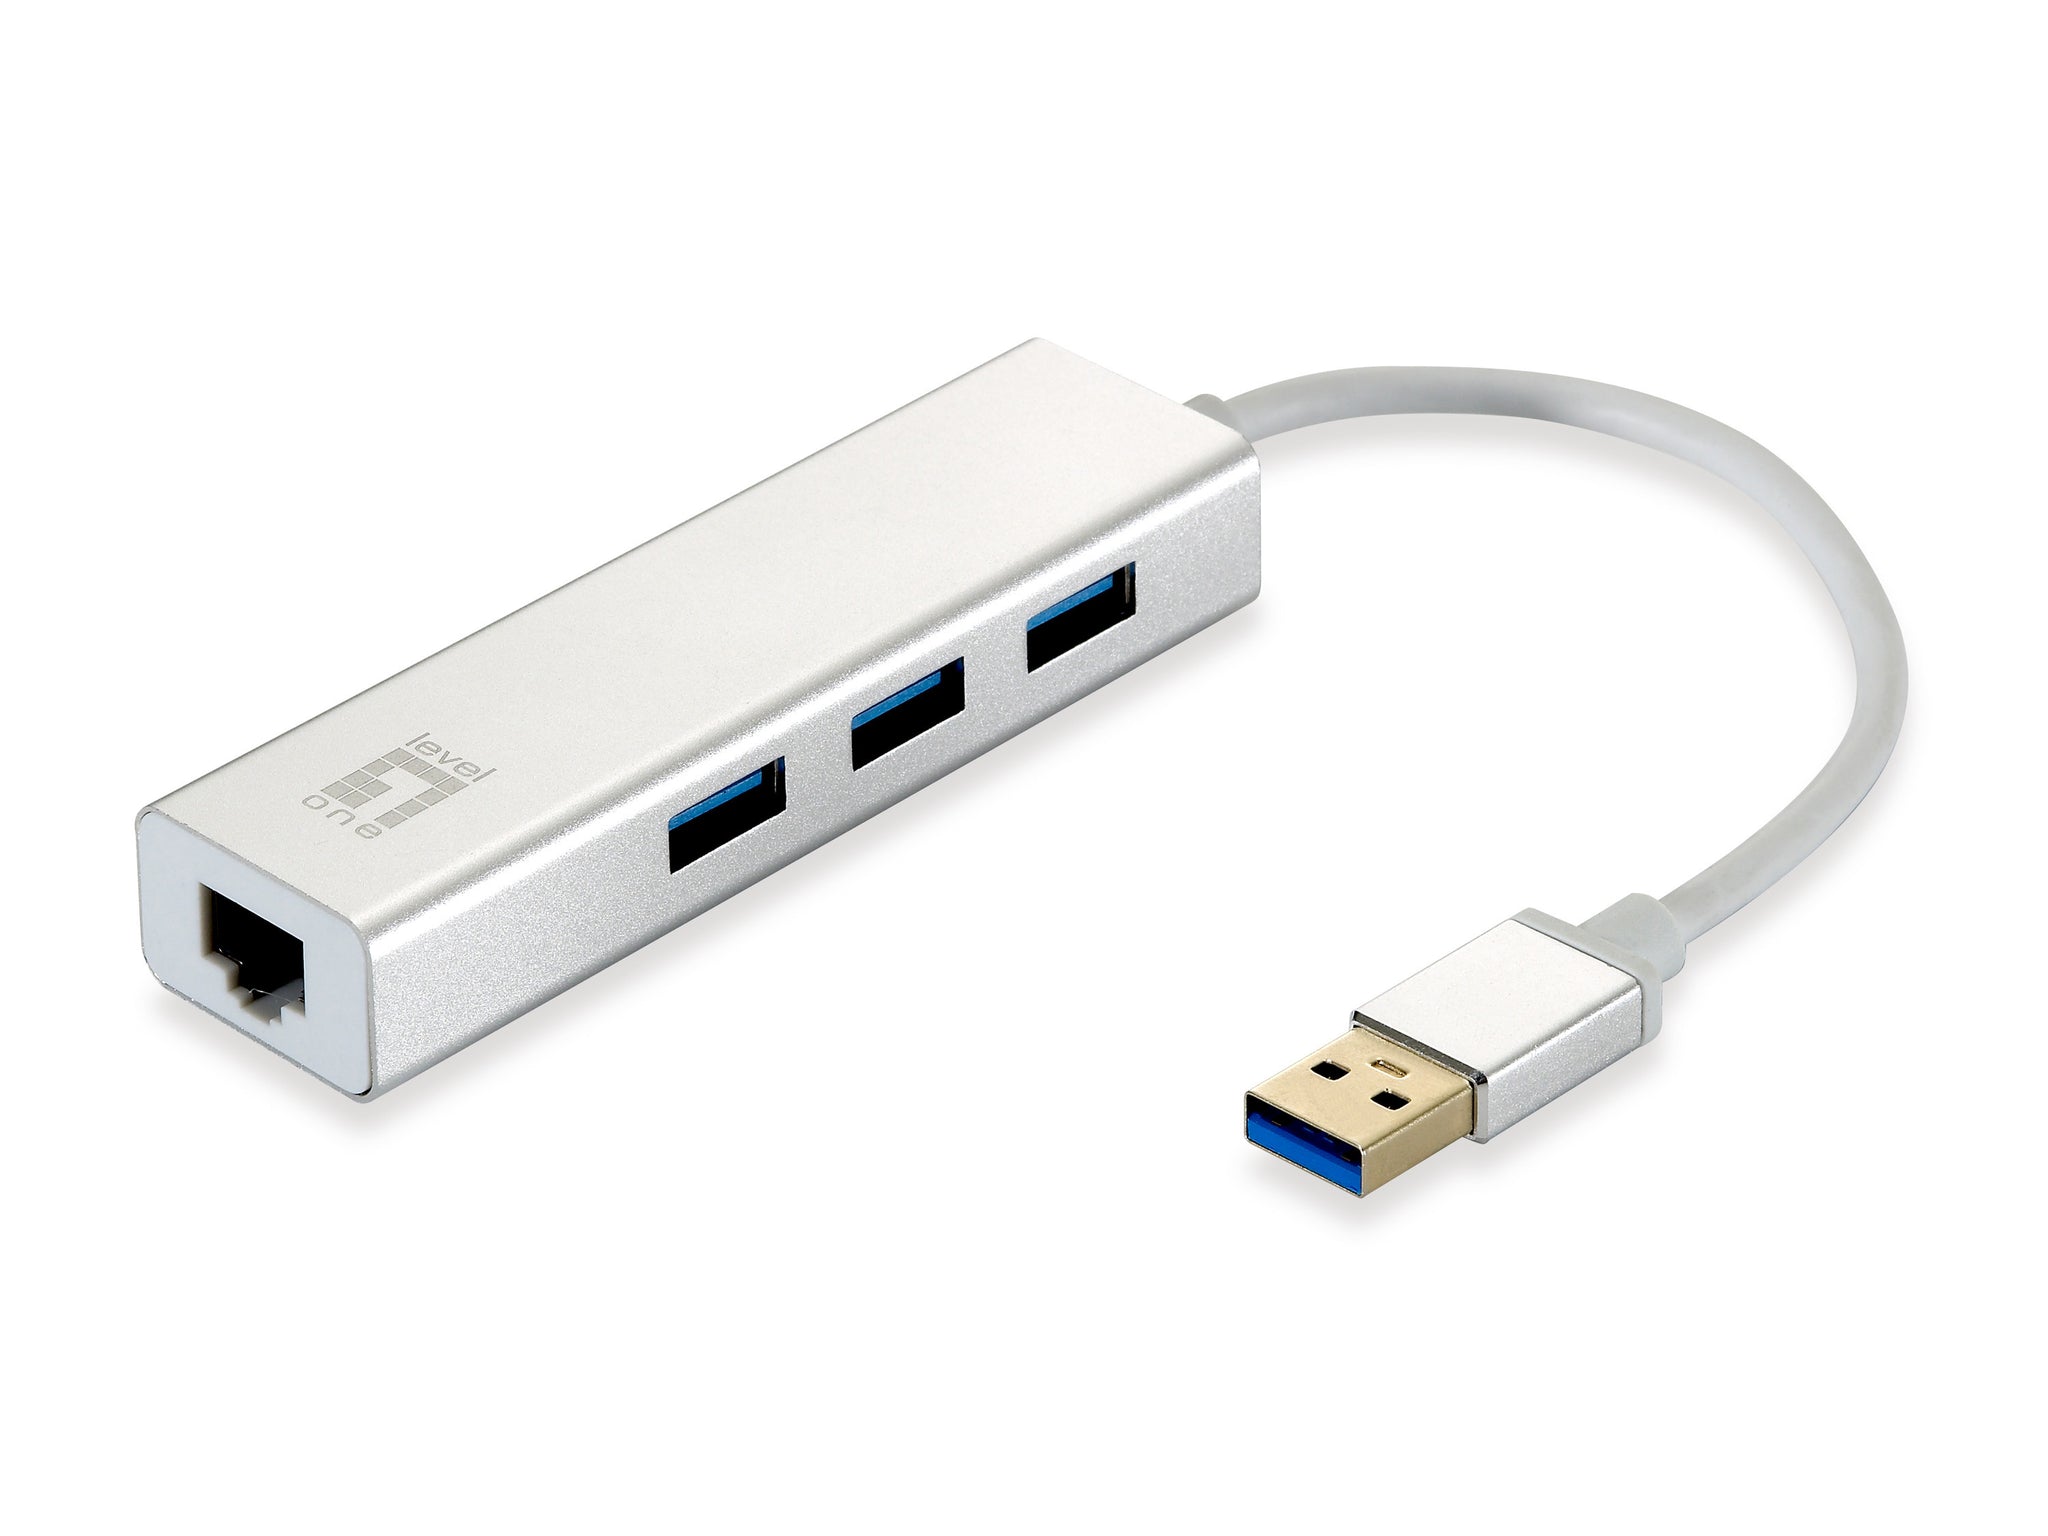 Adaptador de red USB Gigabit USB-0503, concentrador USB